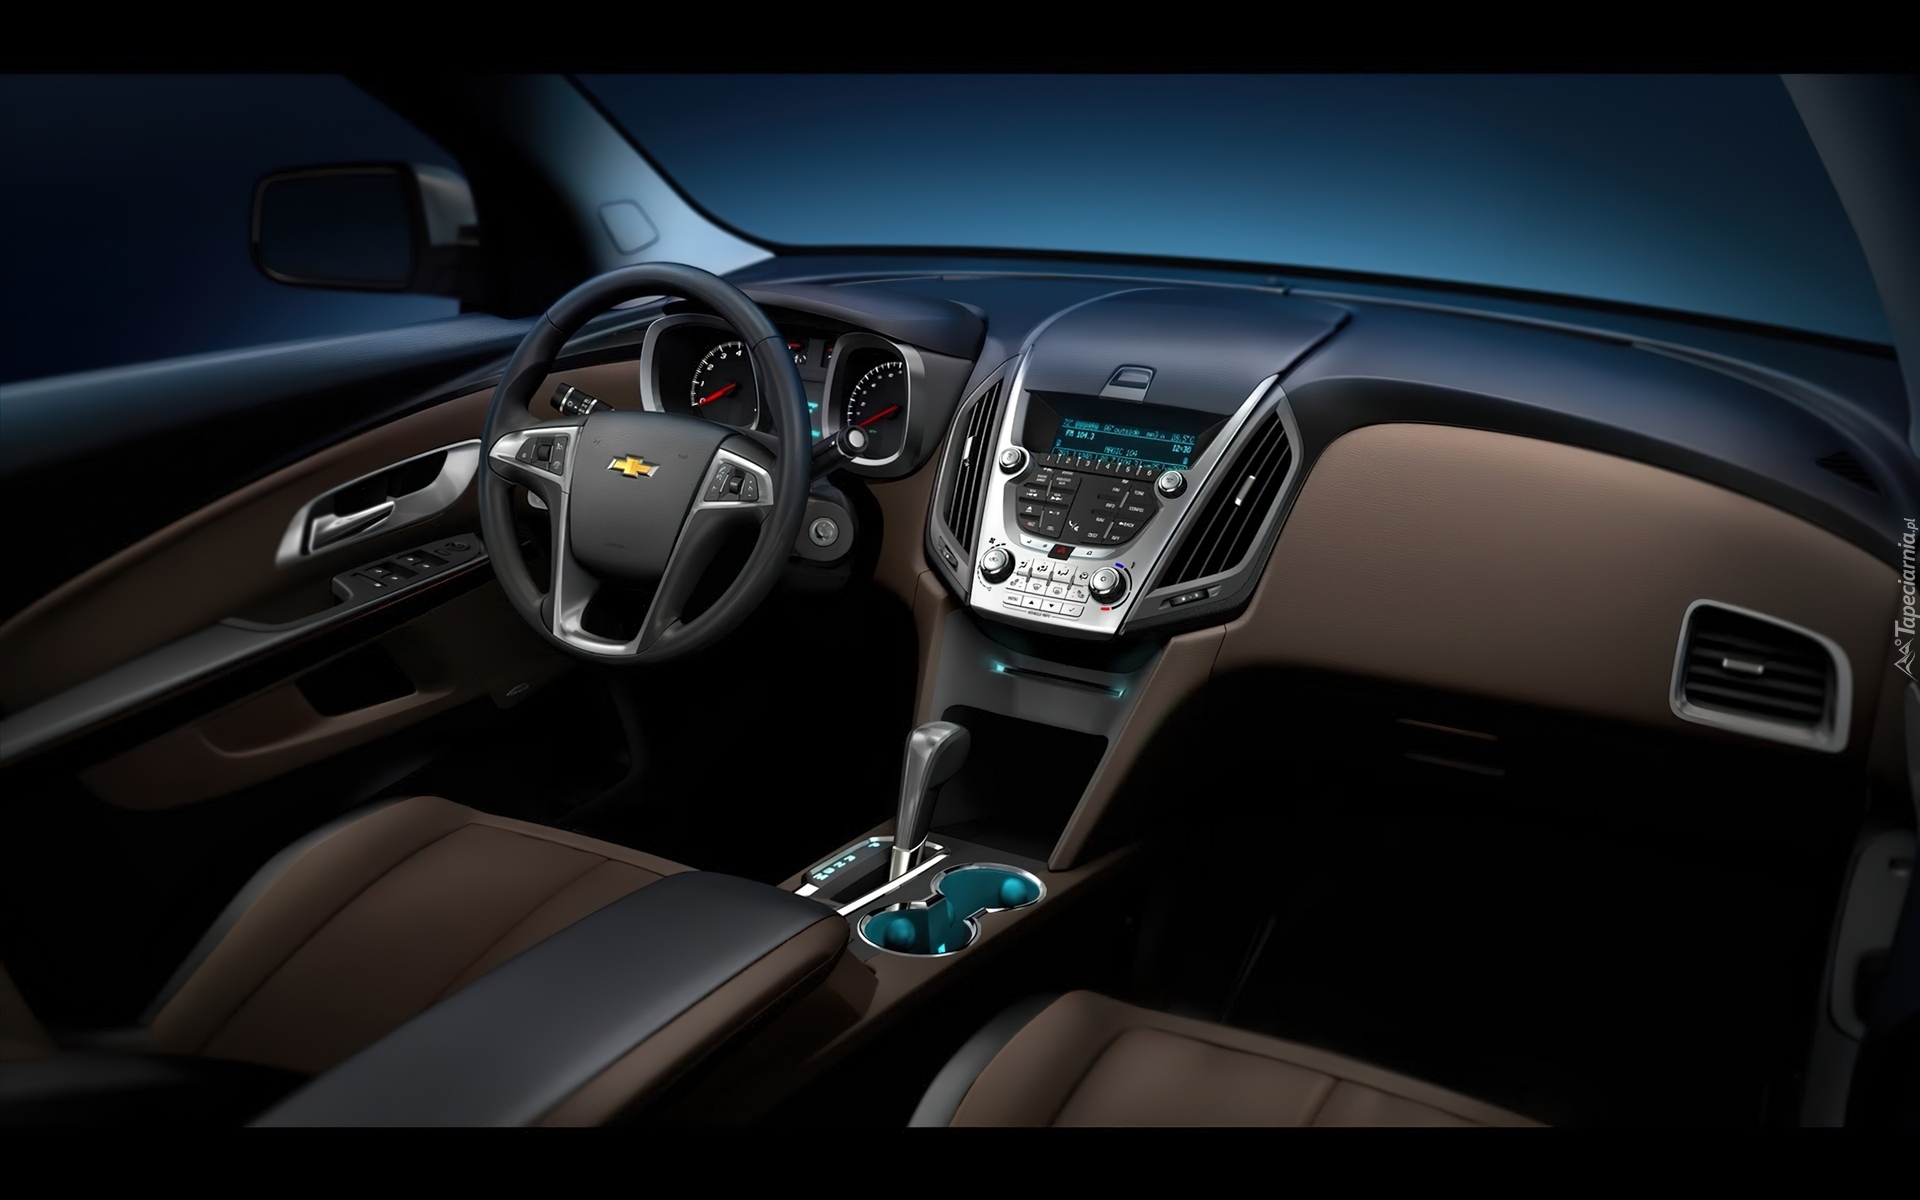 Chevrolet Equinox, Panel, Klimatyzacji